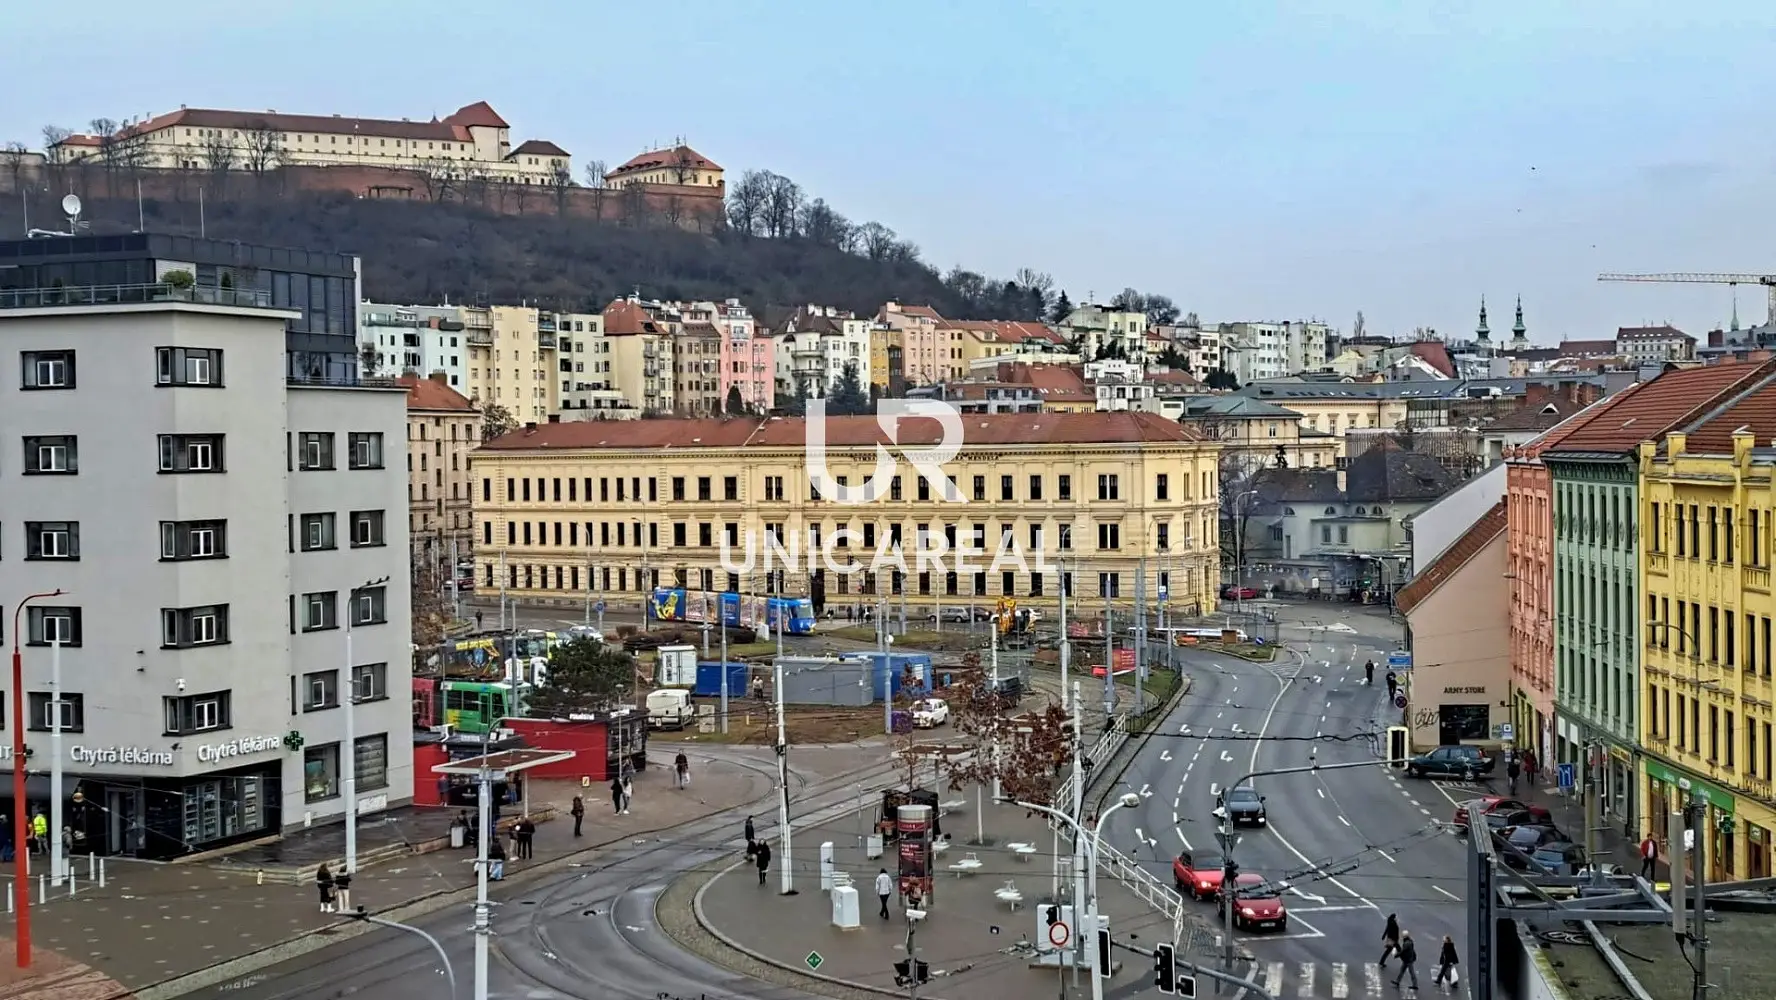 Mendlovo náměstí, Brno - Staré Brno